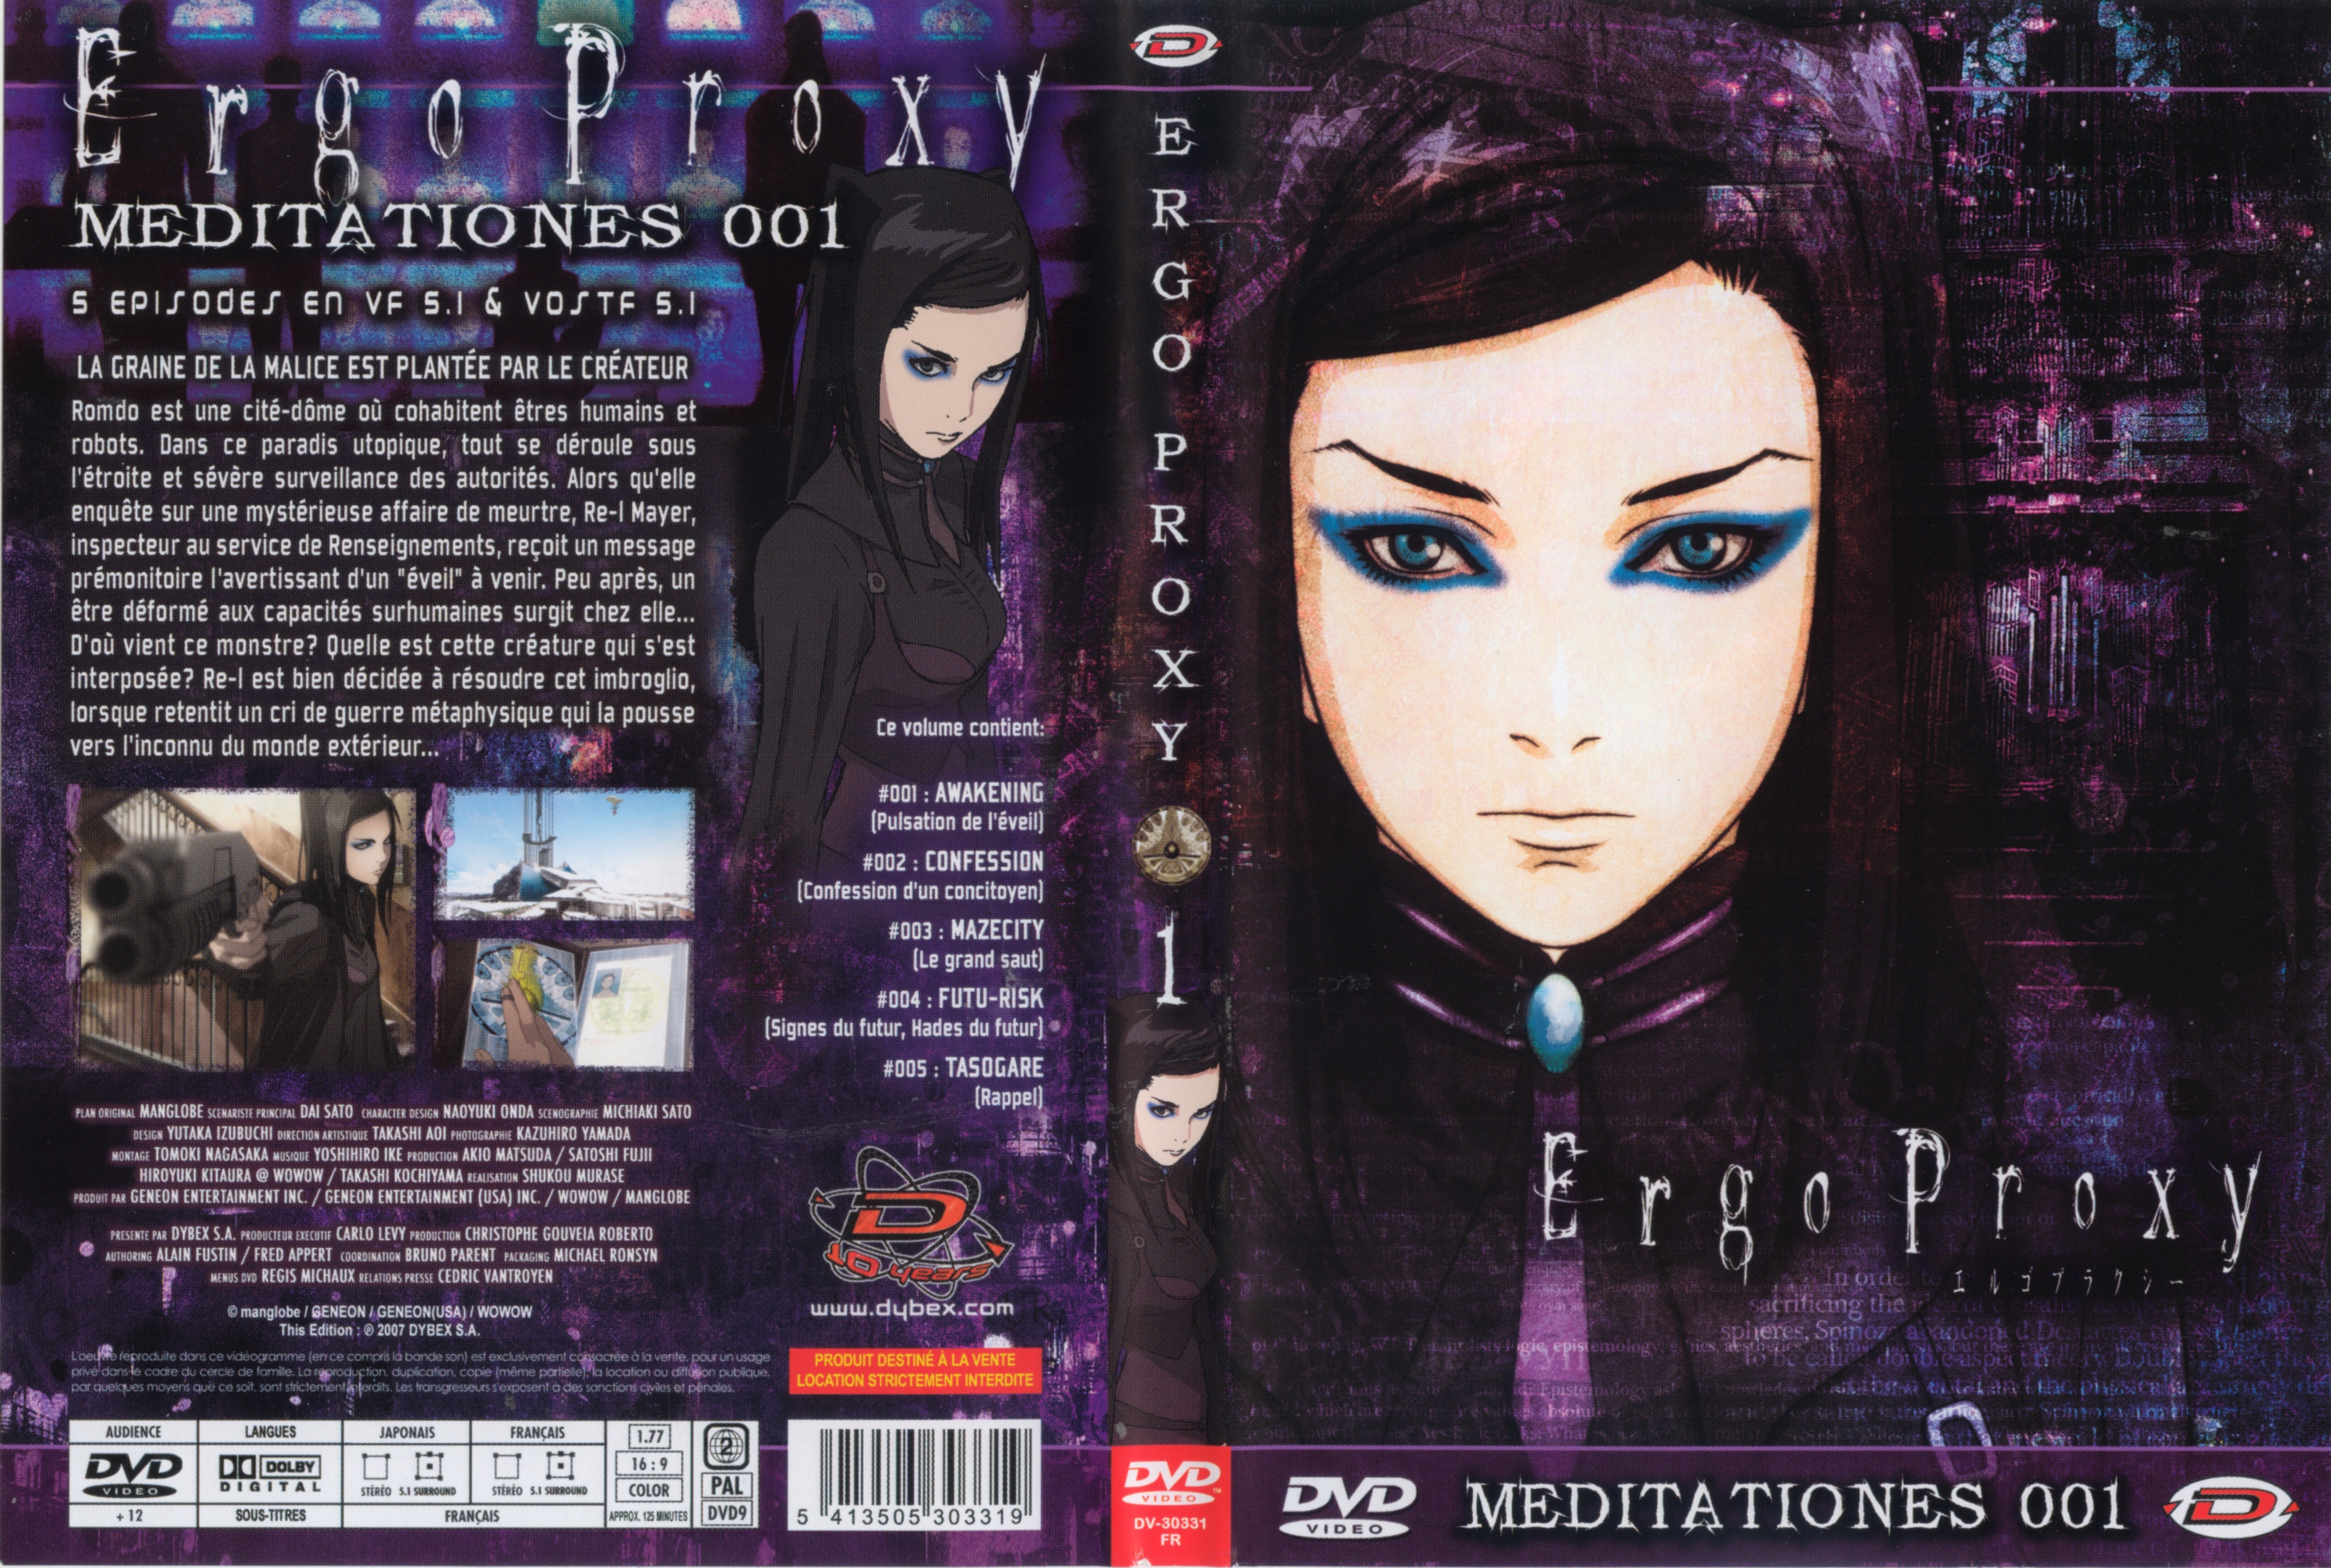 Jaquette DVD Ergo Proxy vol 1